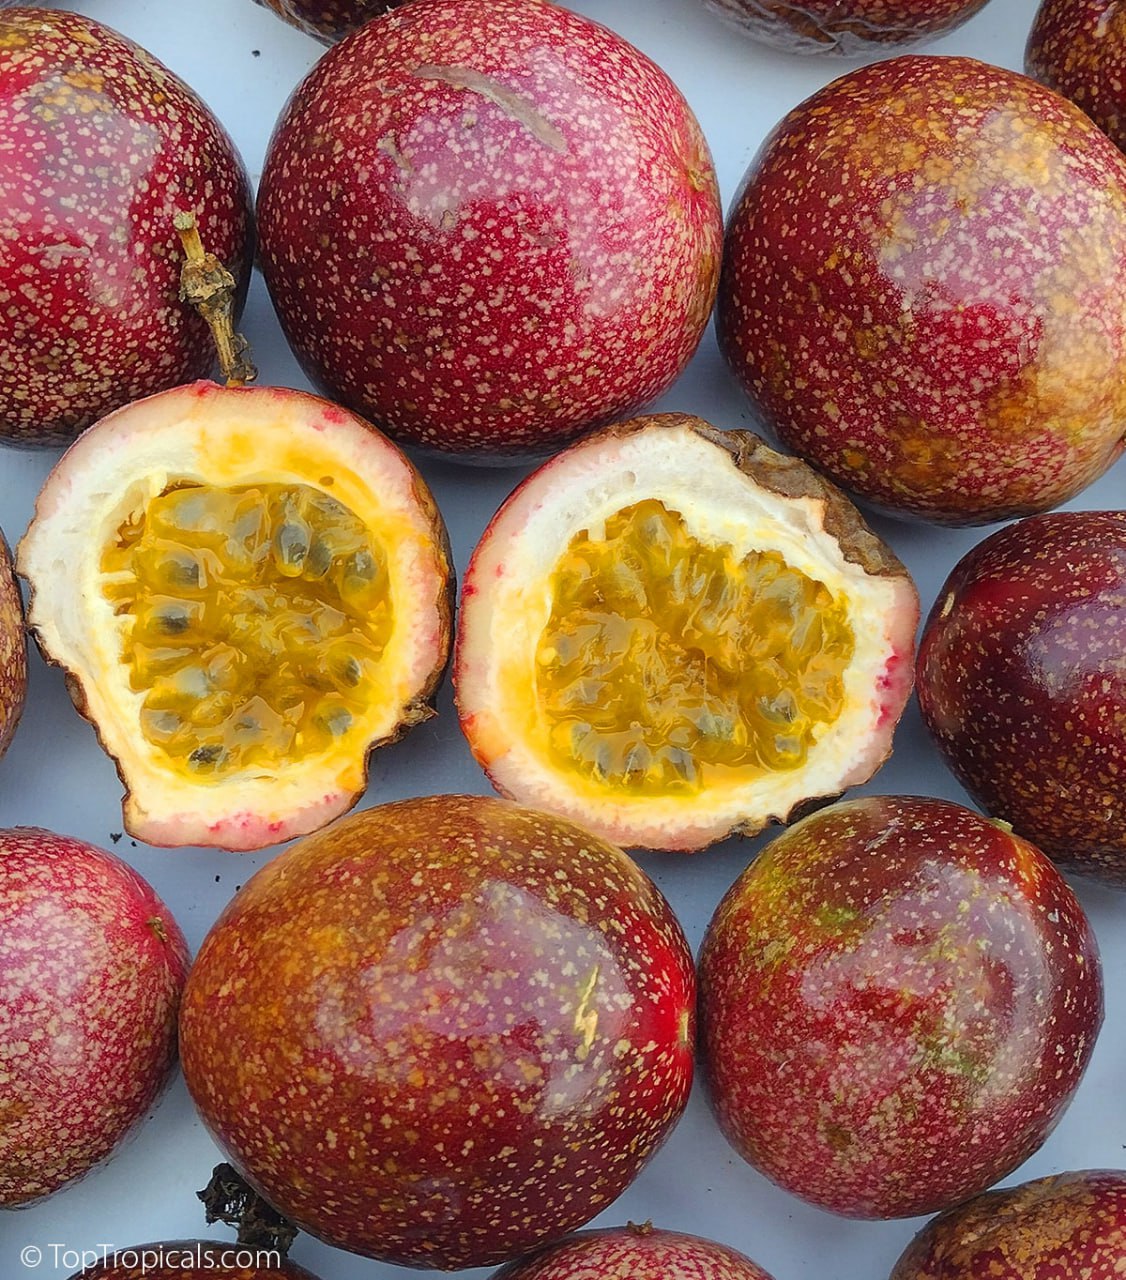 Passion fruit - Passiflora 